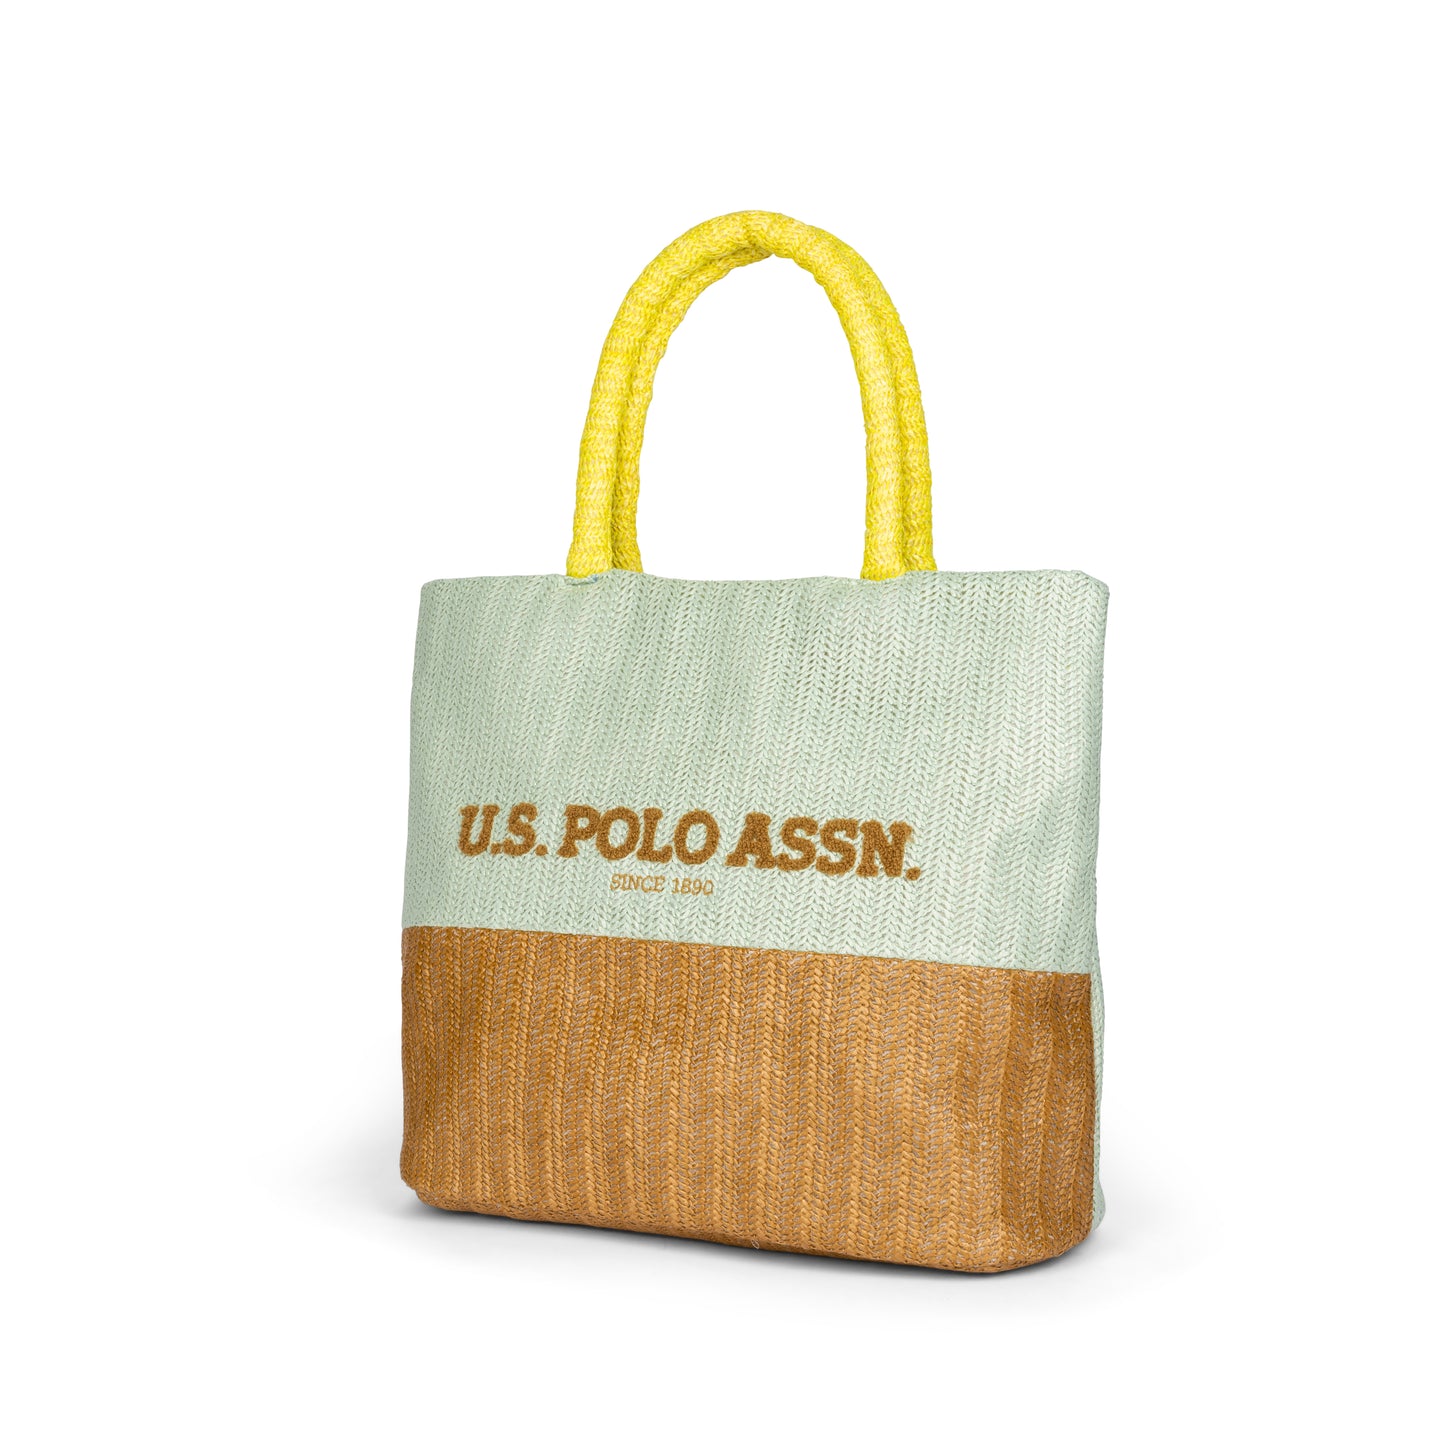 U.S. Polo Assn. Straw Bag 4 BEUA76465WZAN64 Brown/Green Shopping Bag